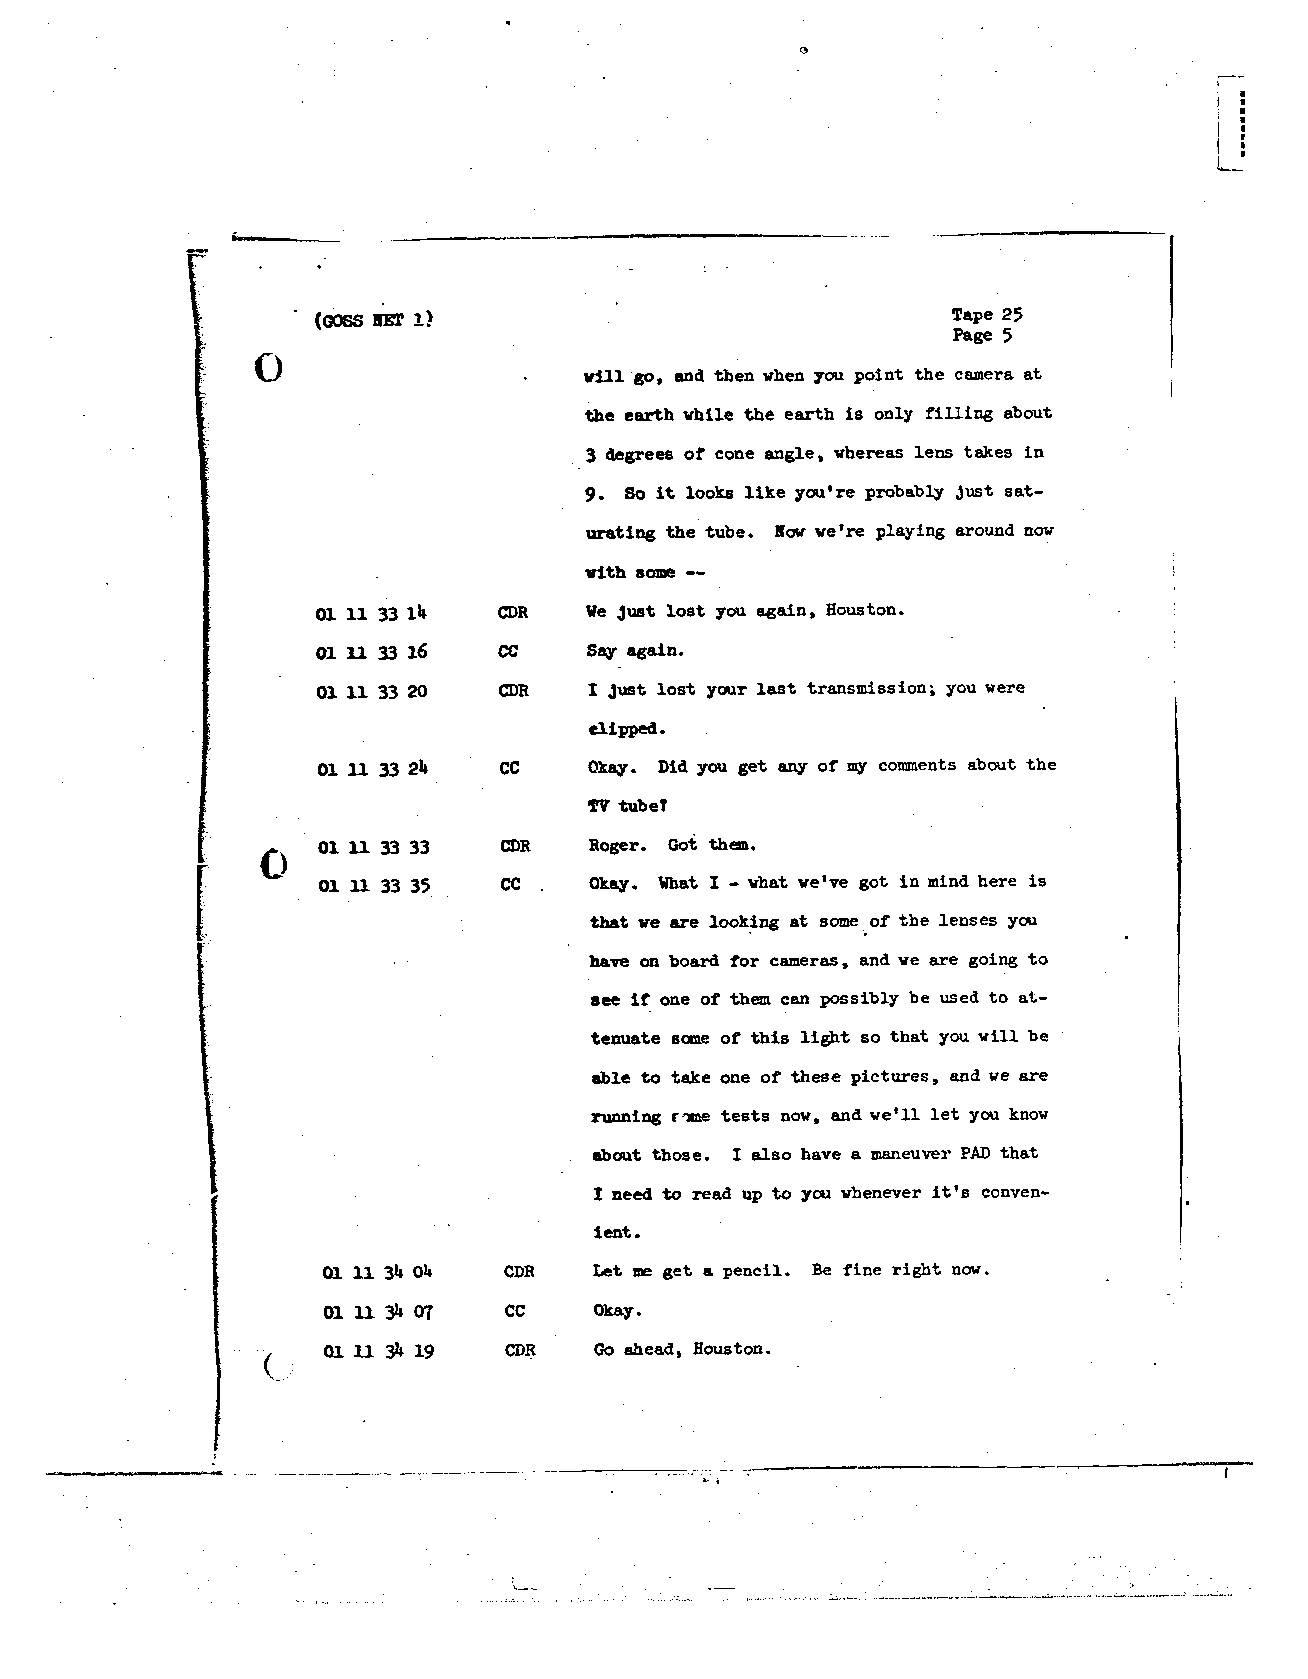 Page 203 of Apollo 8’s original transcript